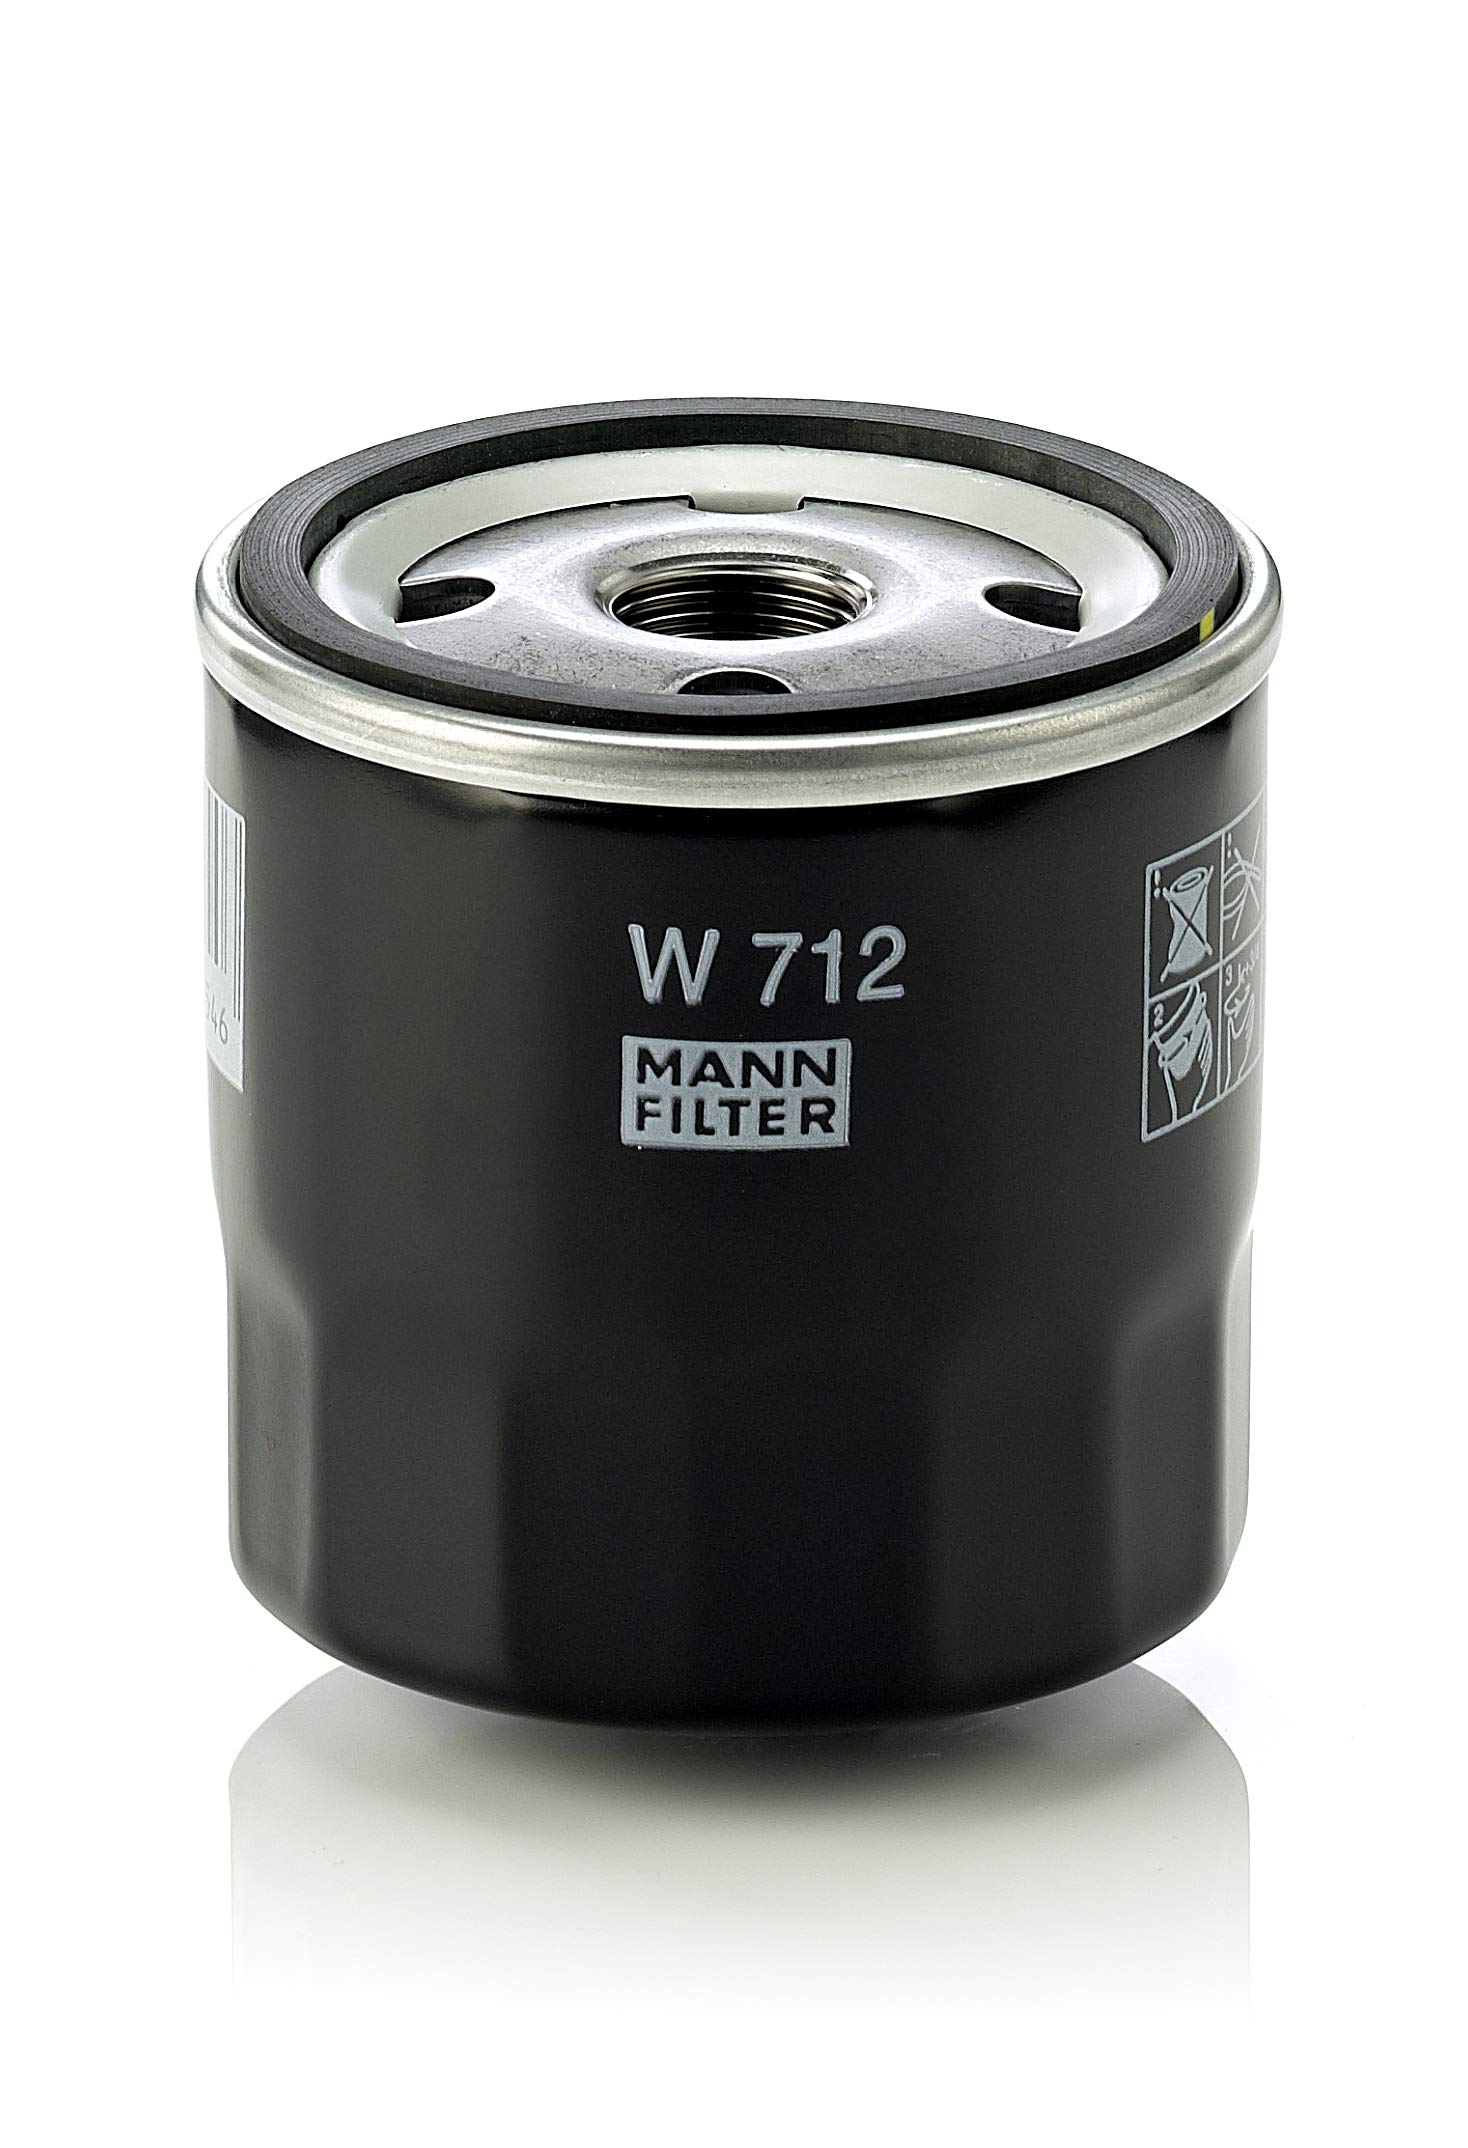 MANN-FILTER W 712 Ölfilter – Entlüftungs- & Hydraulikfilter – Für PKW und Nutzfahrzeuge von MANN-FILTER